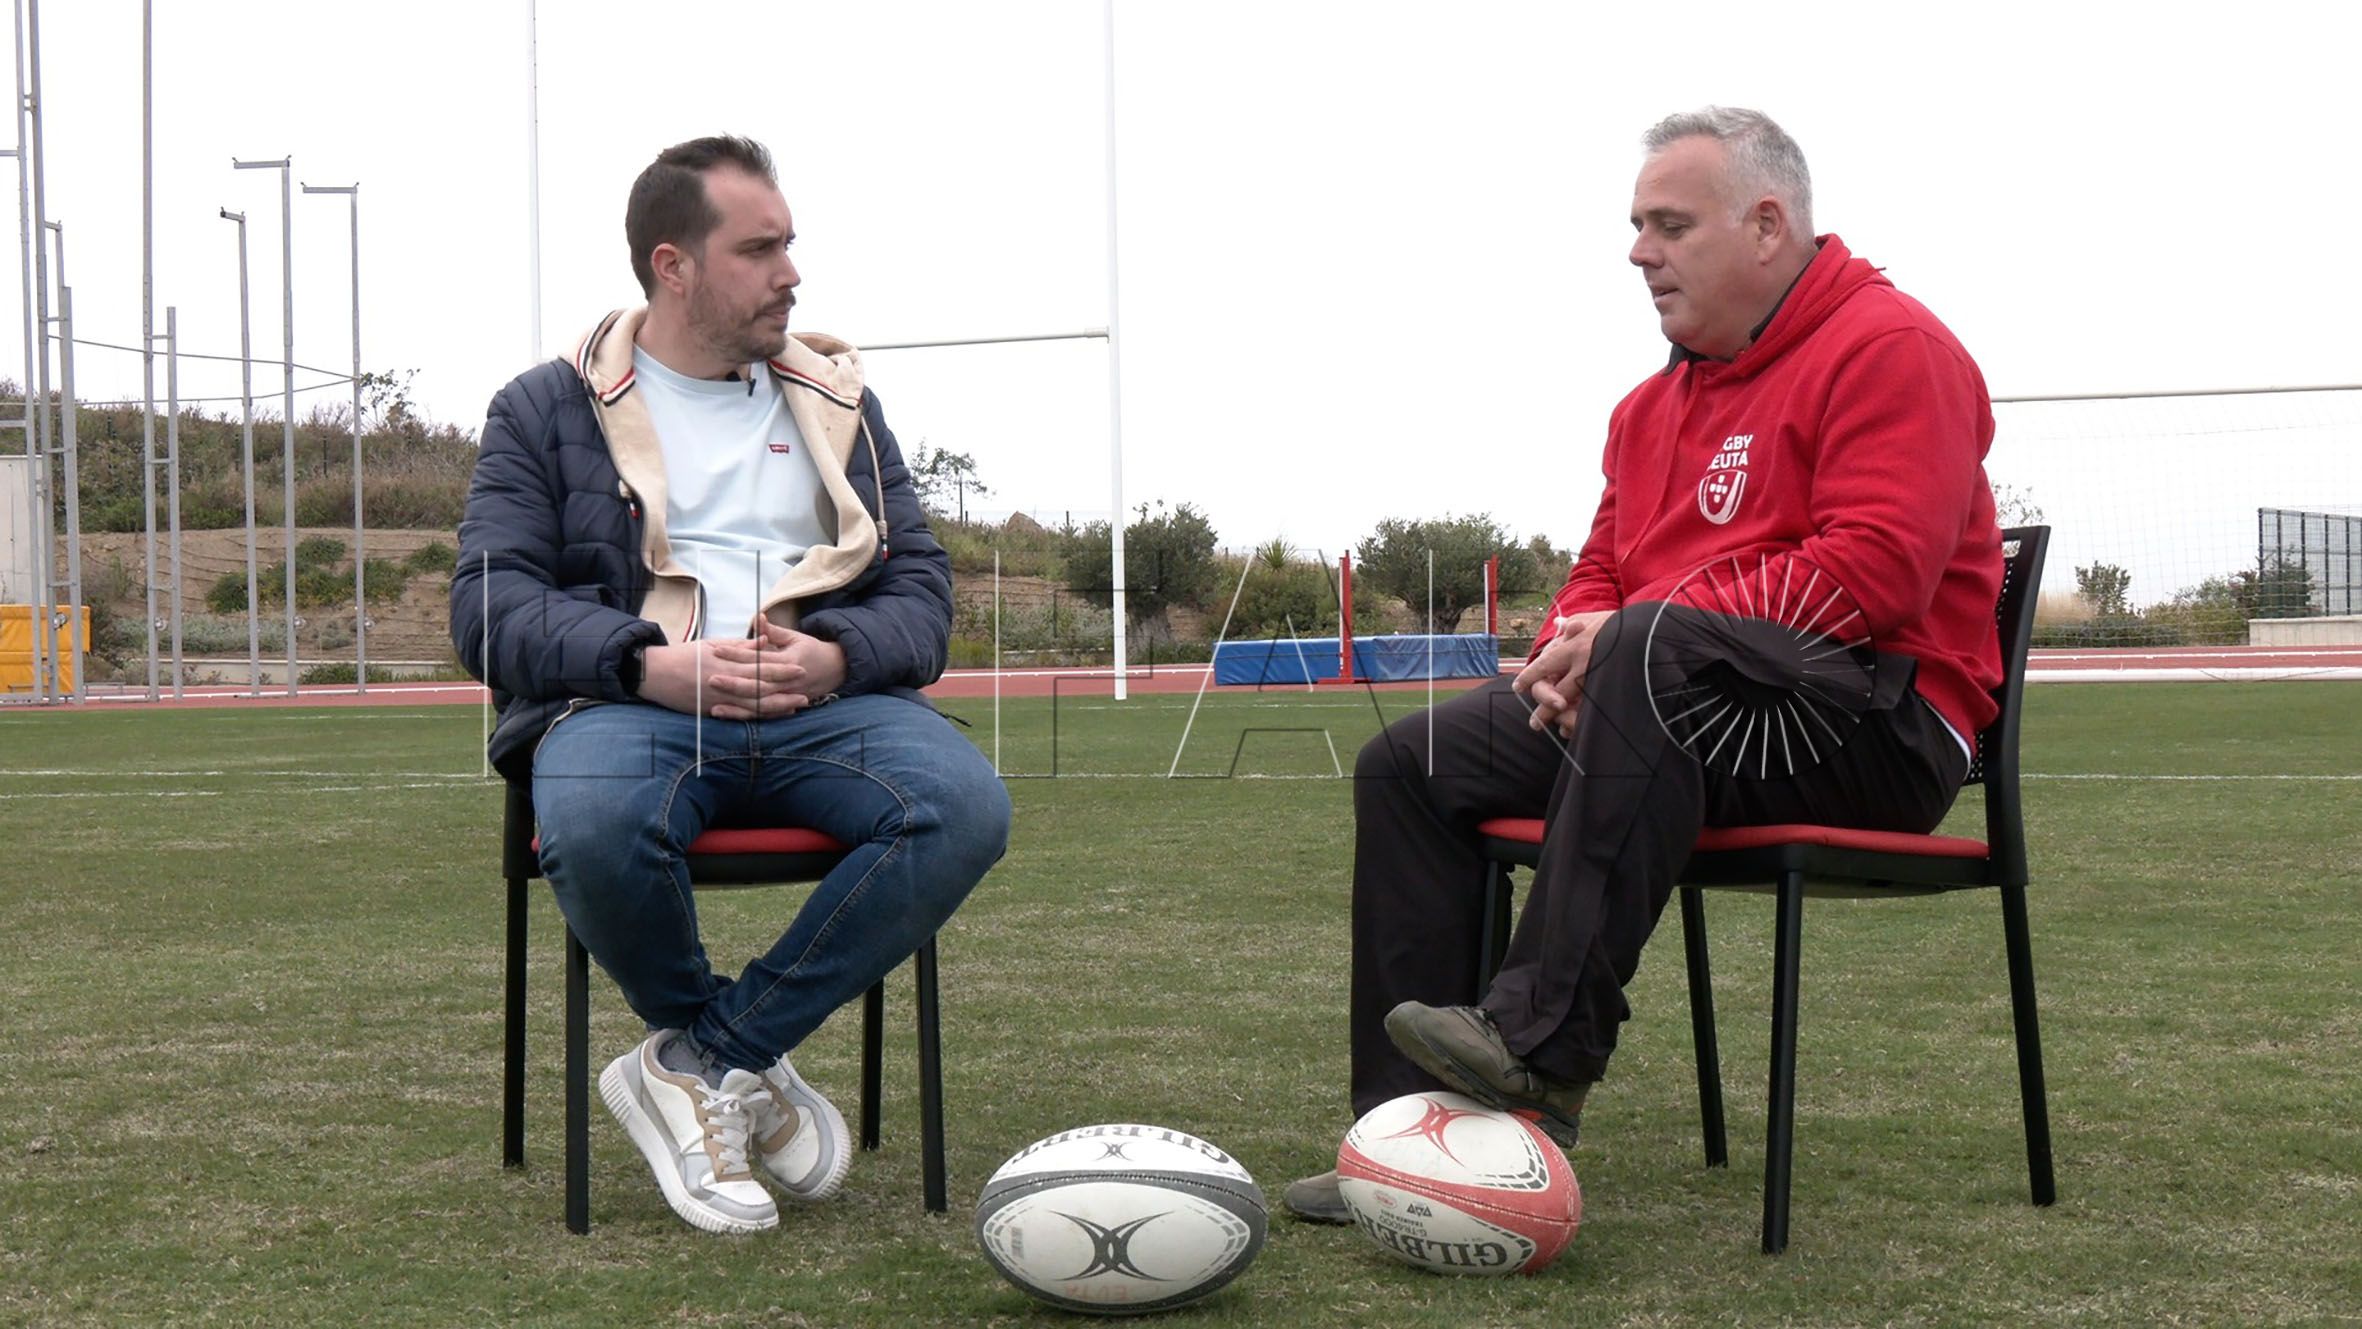 entrevista-paulino-gonzalez-koko-vicepresidente-federacion-rugby-ceuta-2